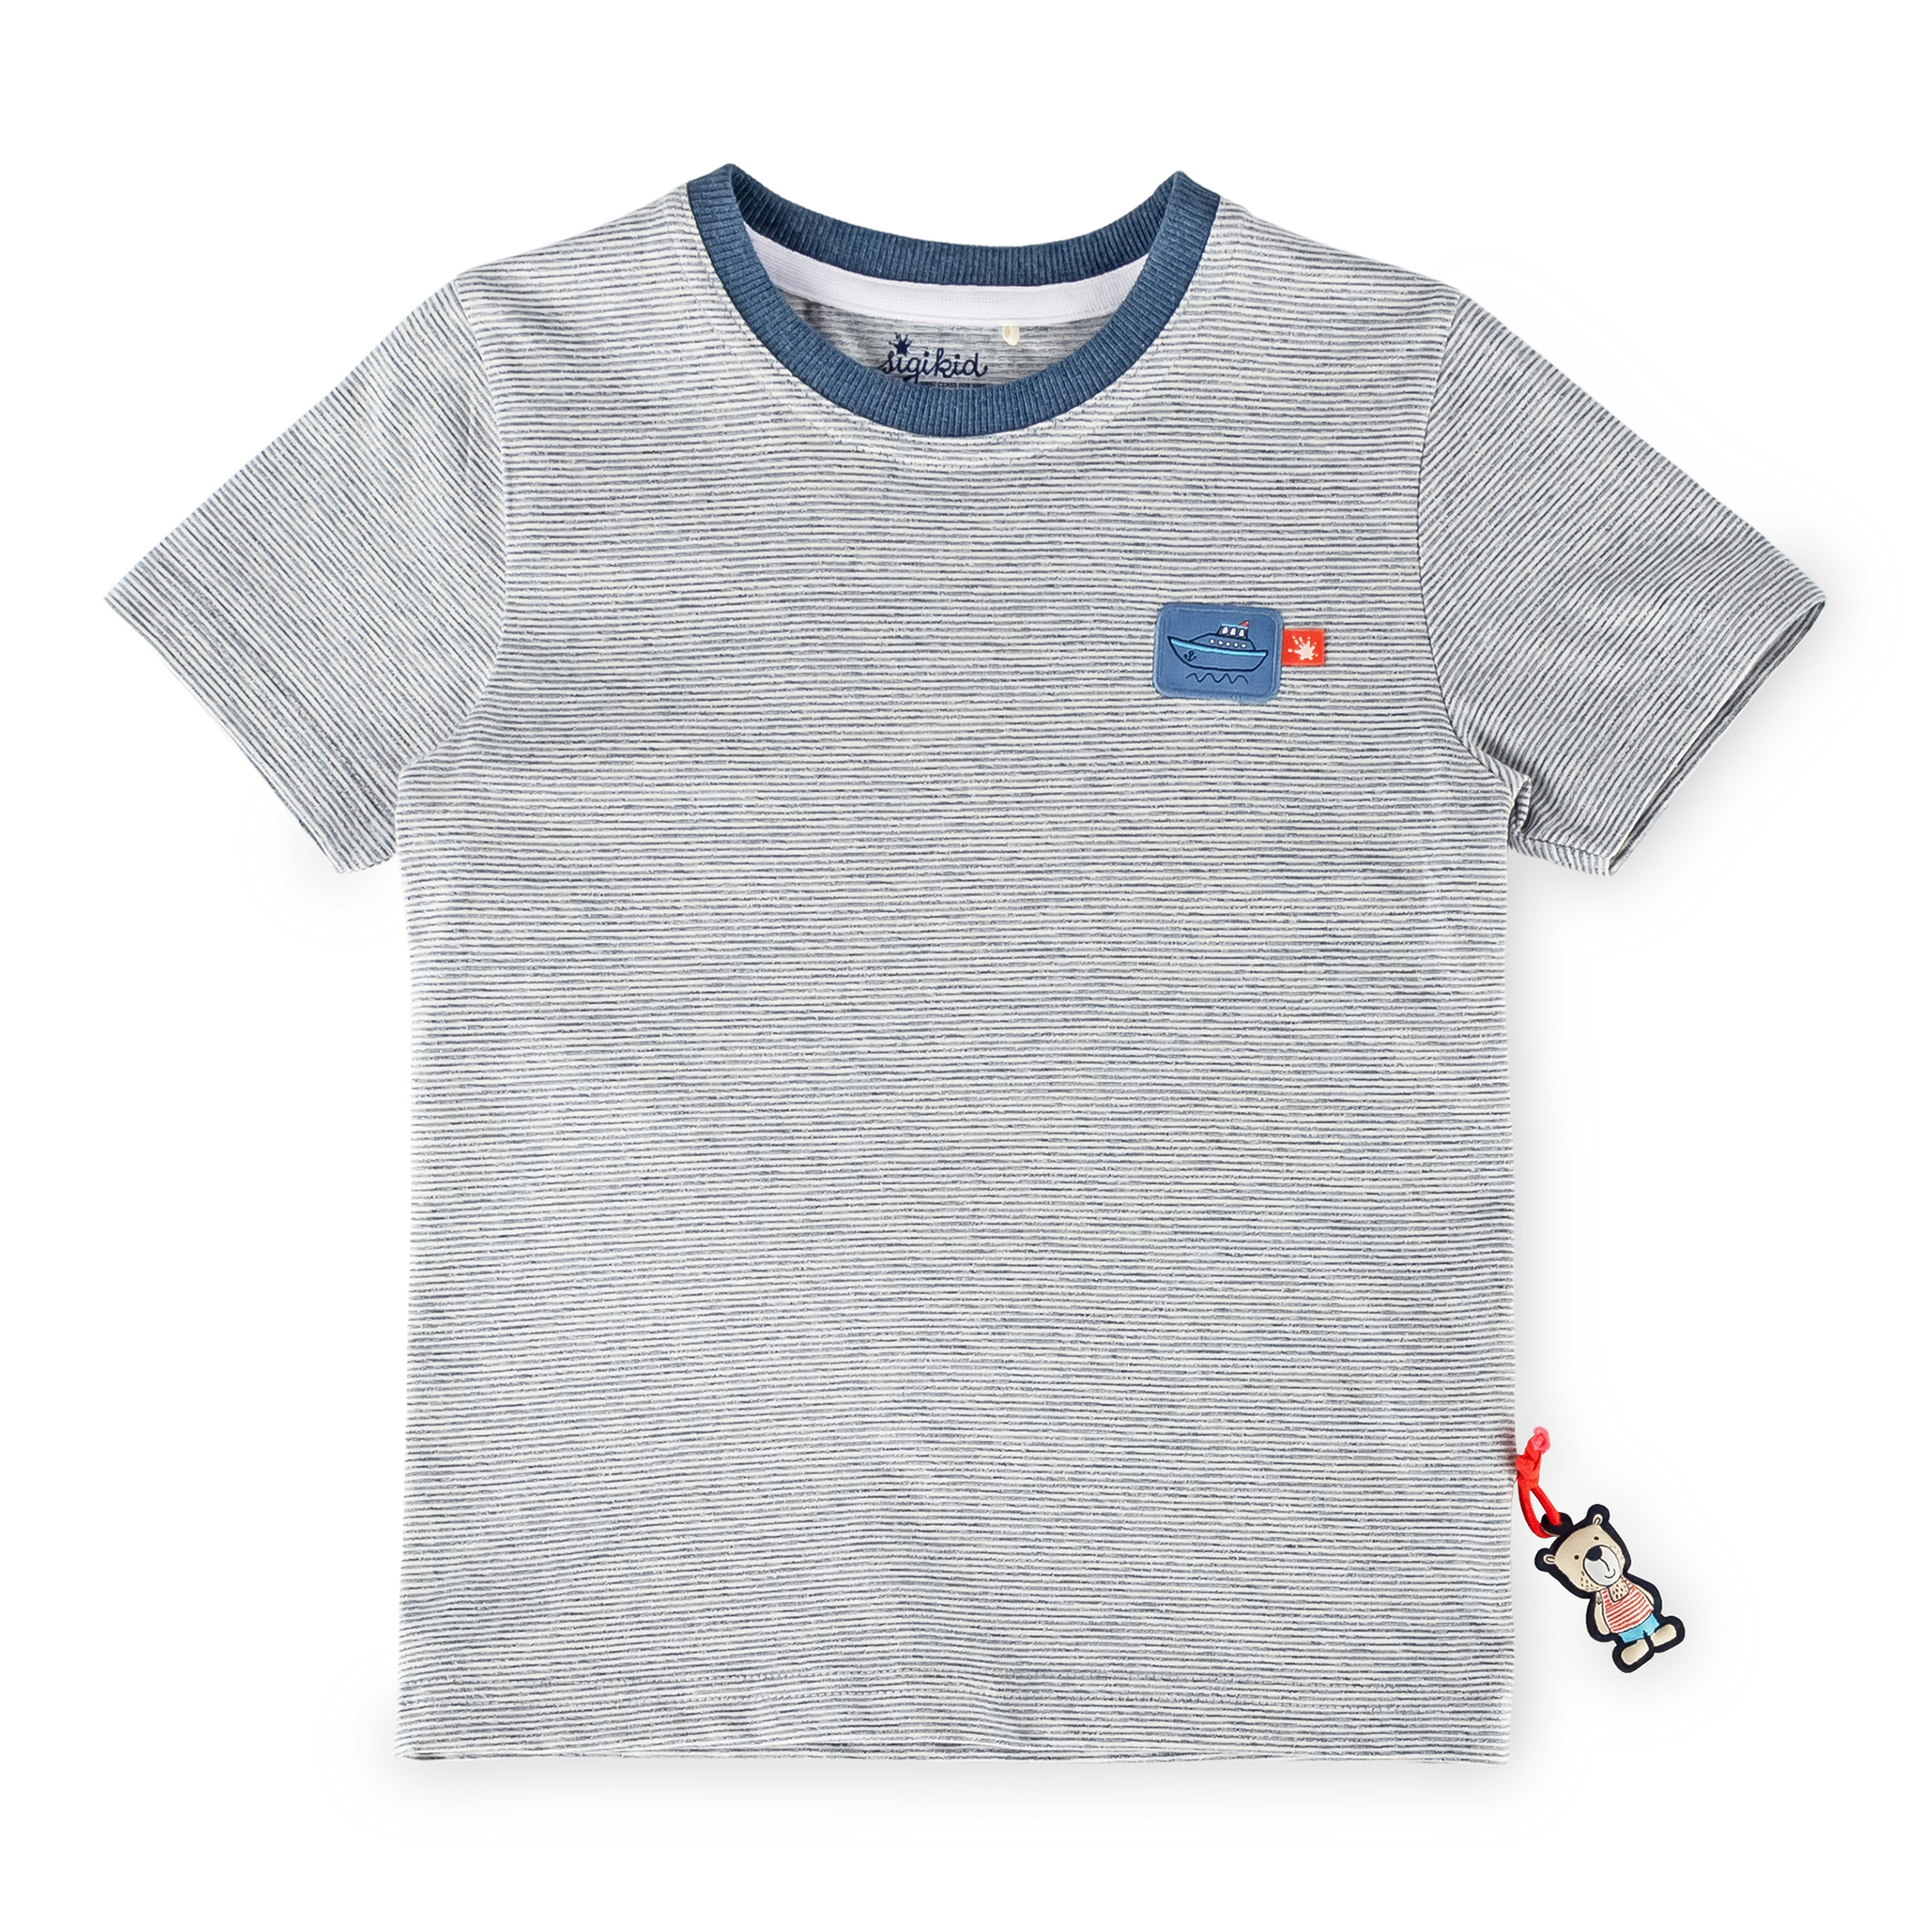 Kinder T-Shirt mit Boot-Patch, blau-weiß meliert